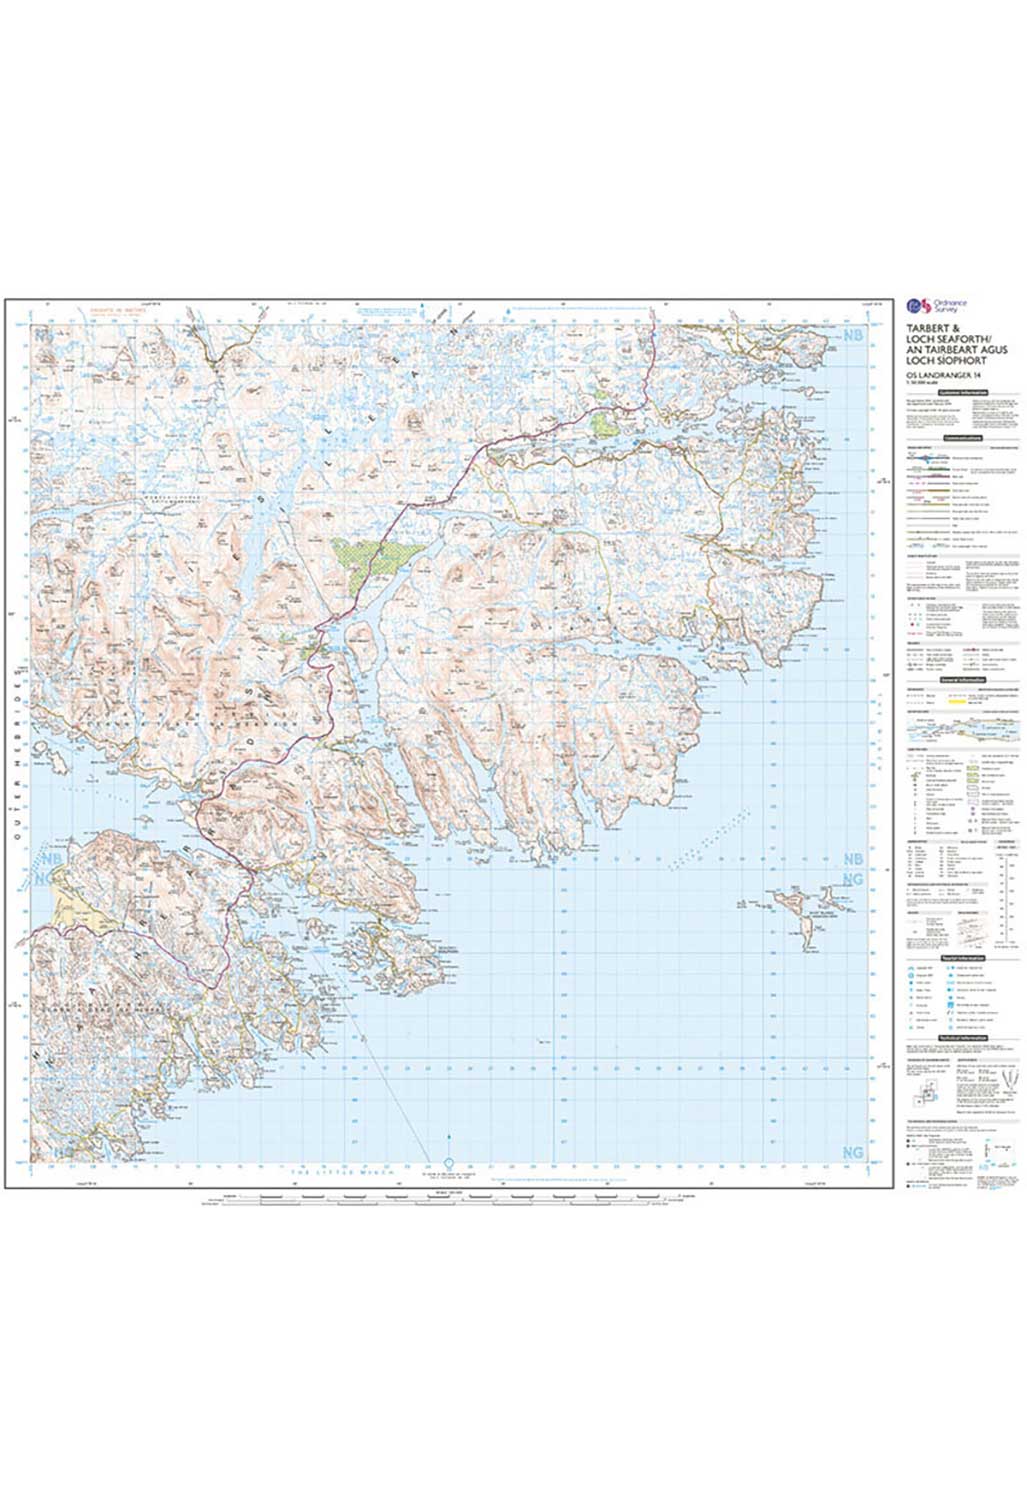 Ordnance Survey Tarbert & Loch Seaforth - Landranger 14 Map